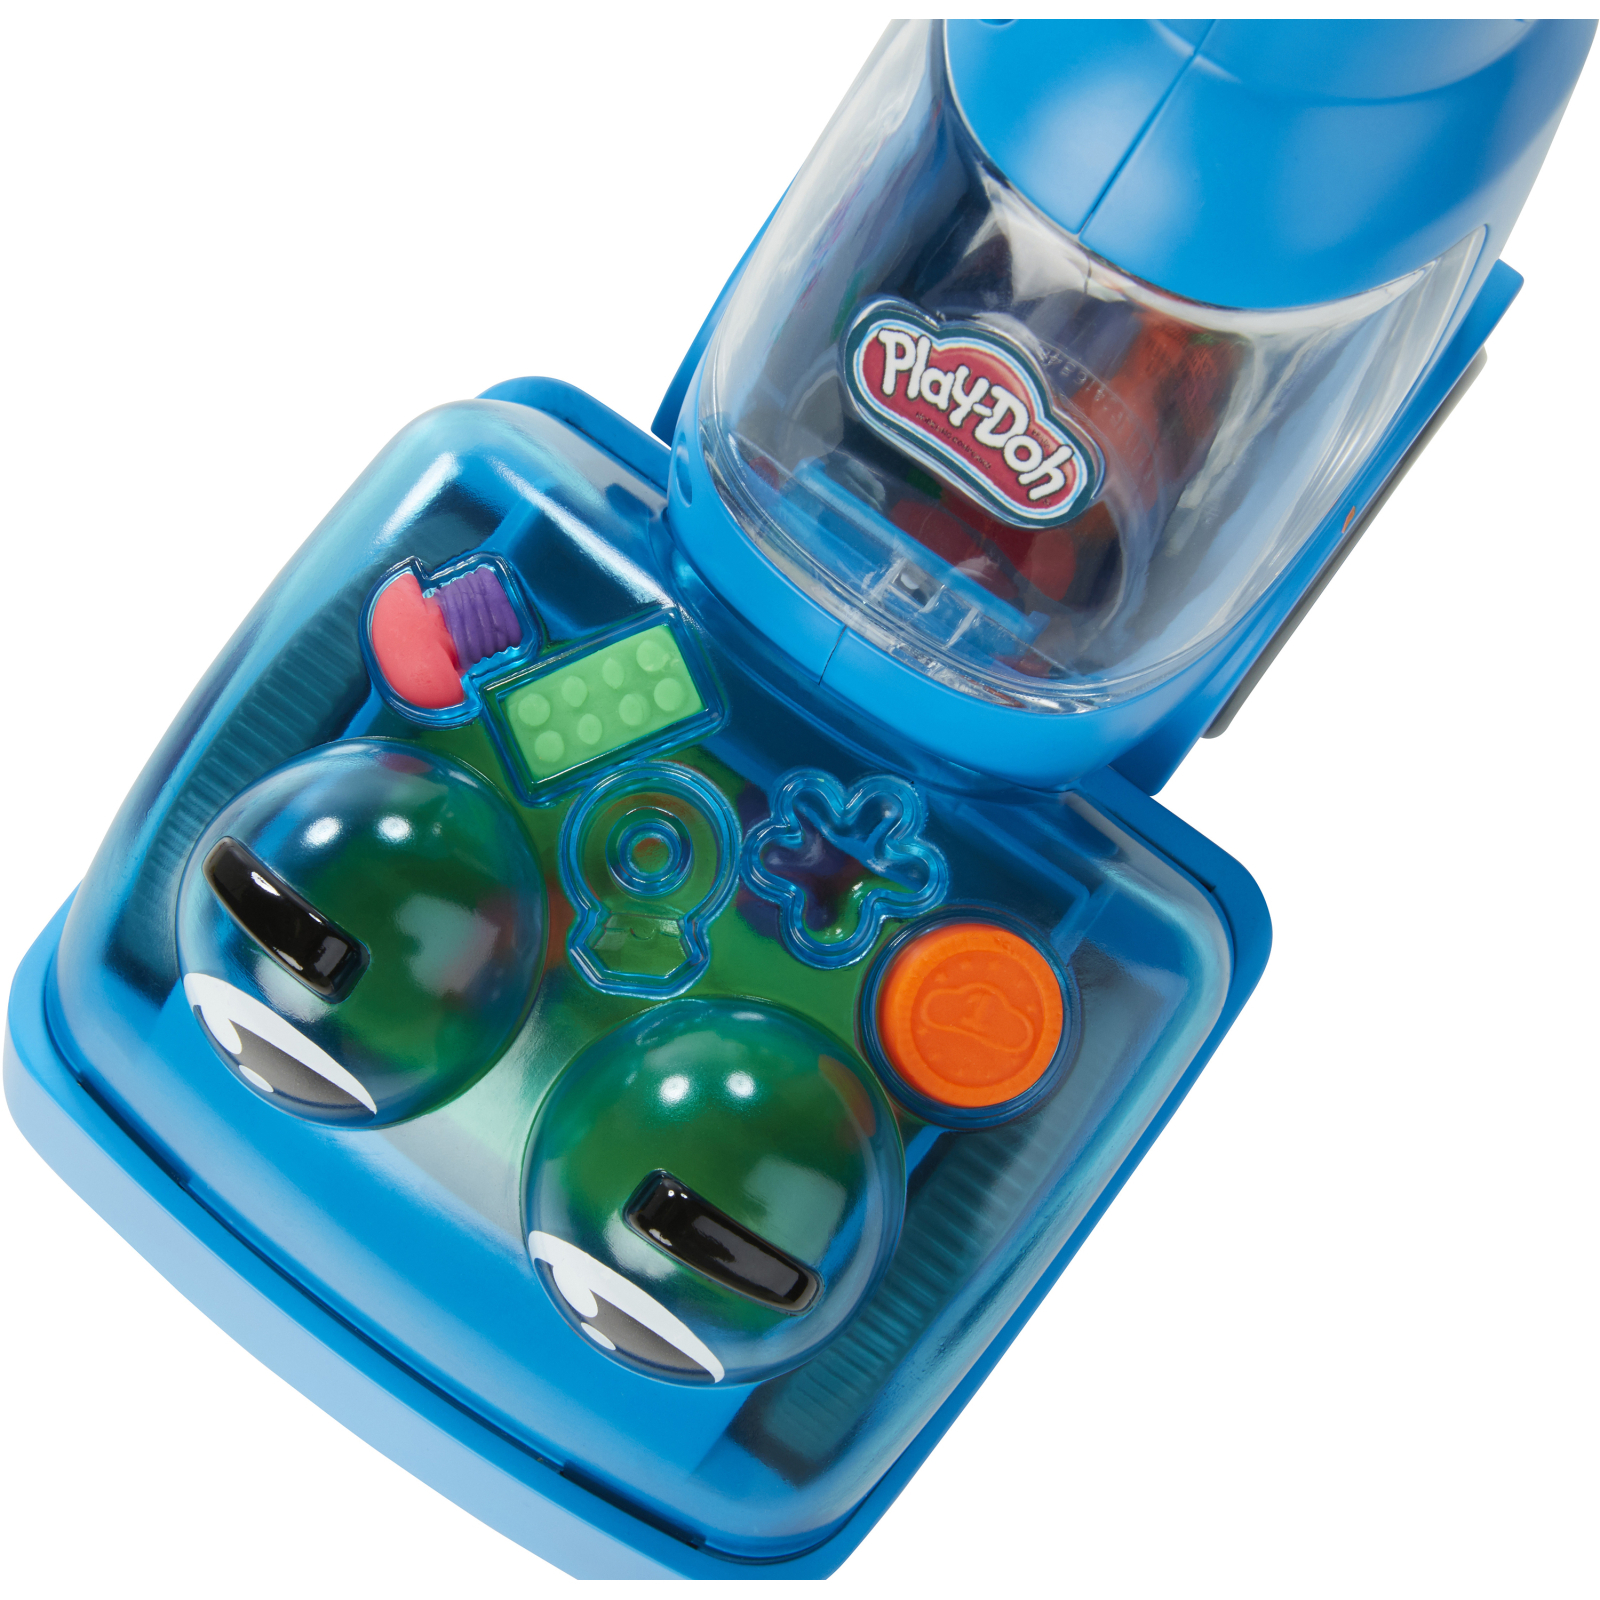 Набор для творчества Hasbro Play-Doh Уборка и очистка (F3642) изображение 12